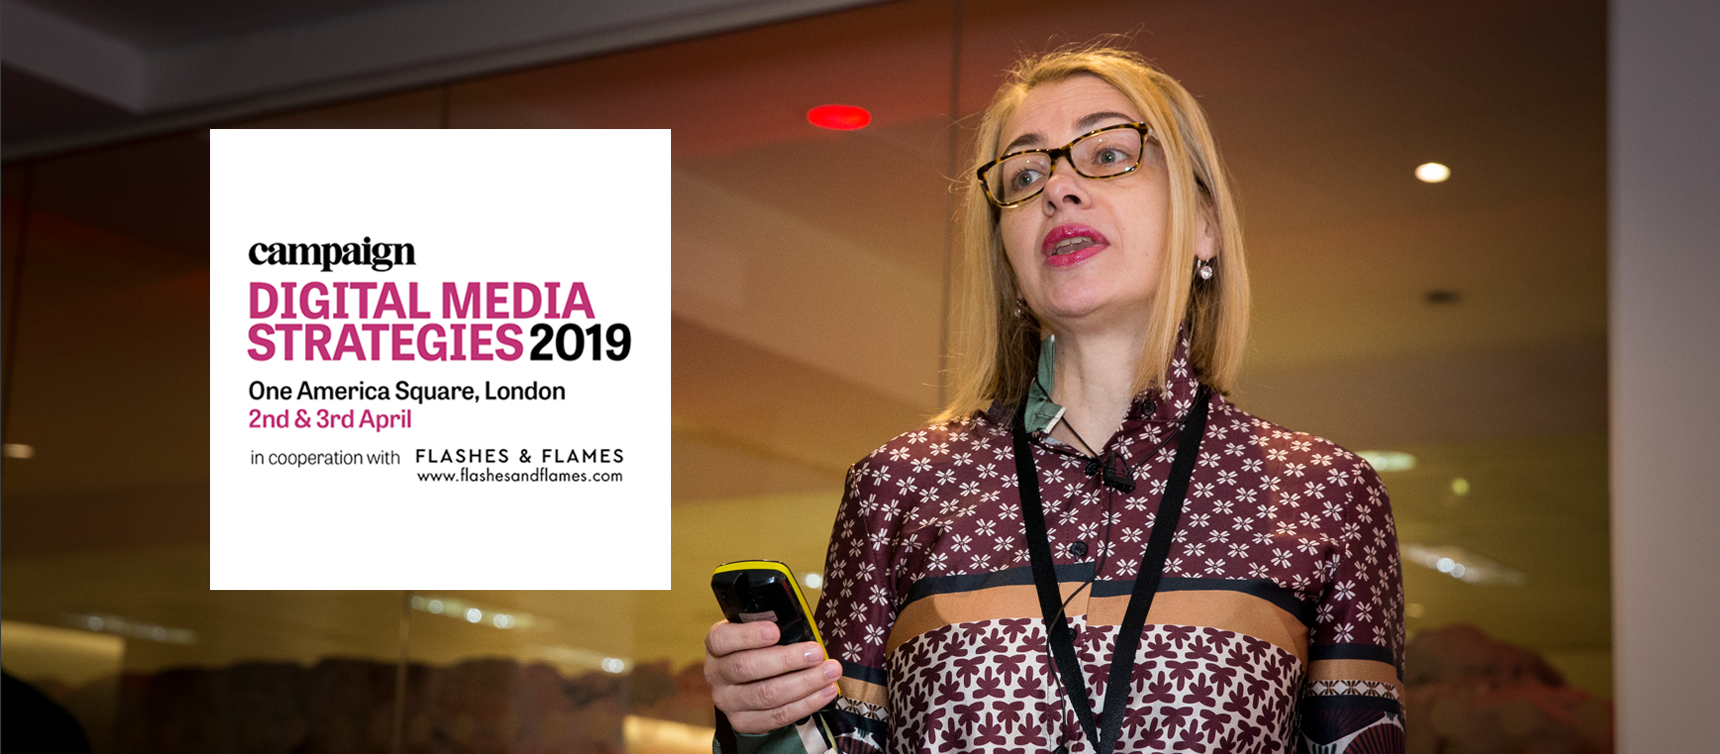 Kinga Incze speaking at Digital Media Strategies 2019 Conference